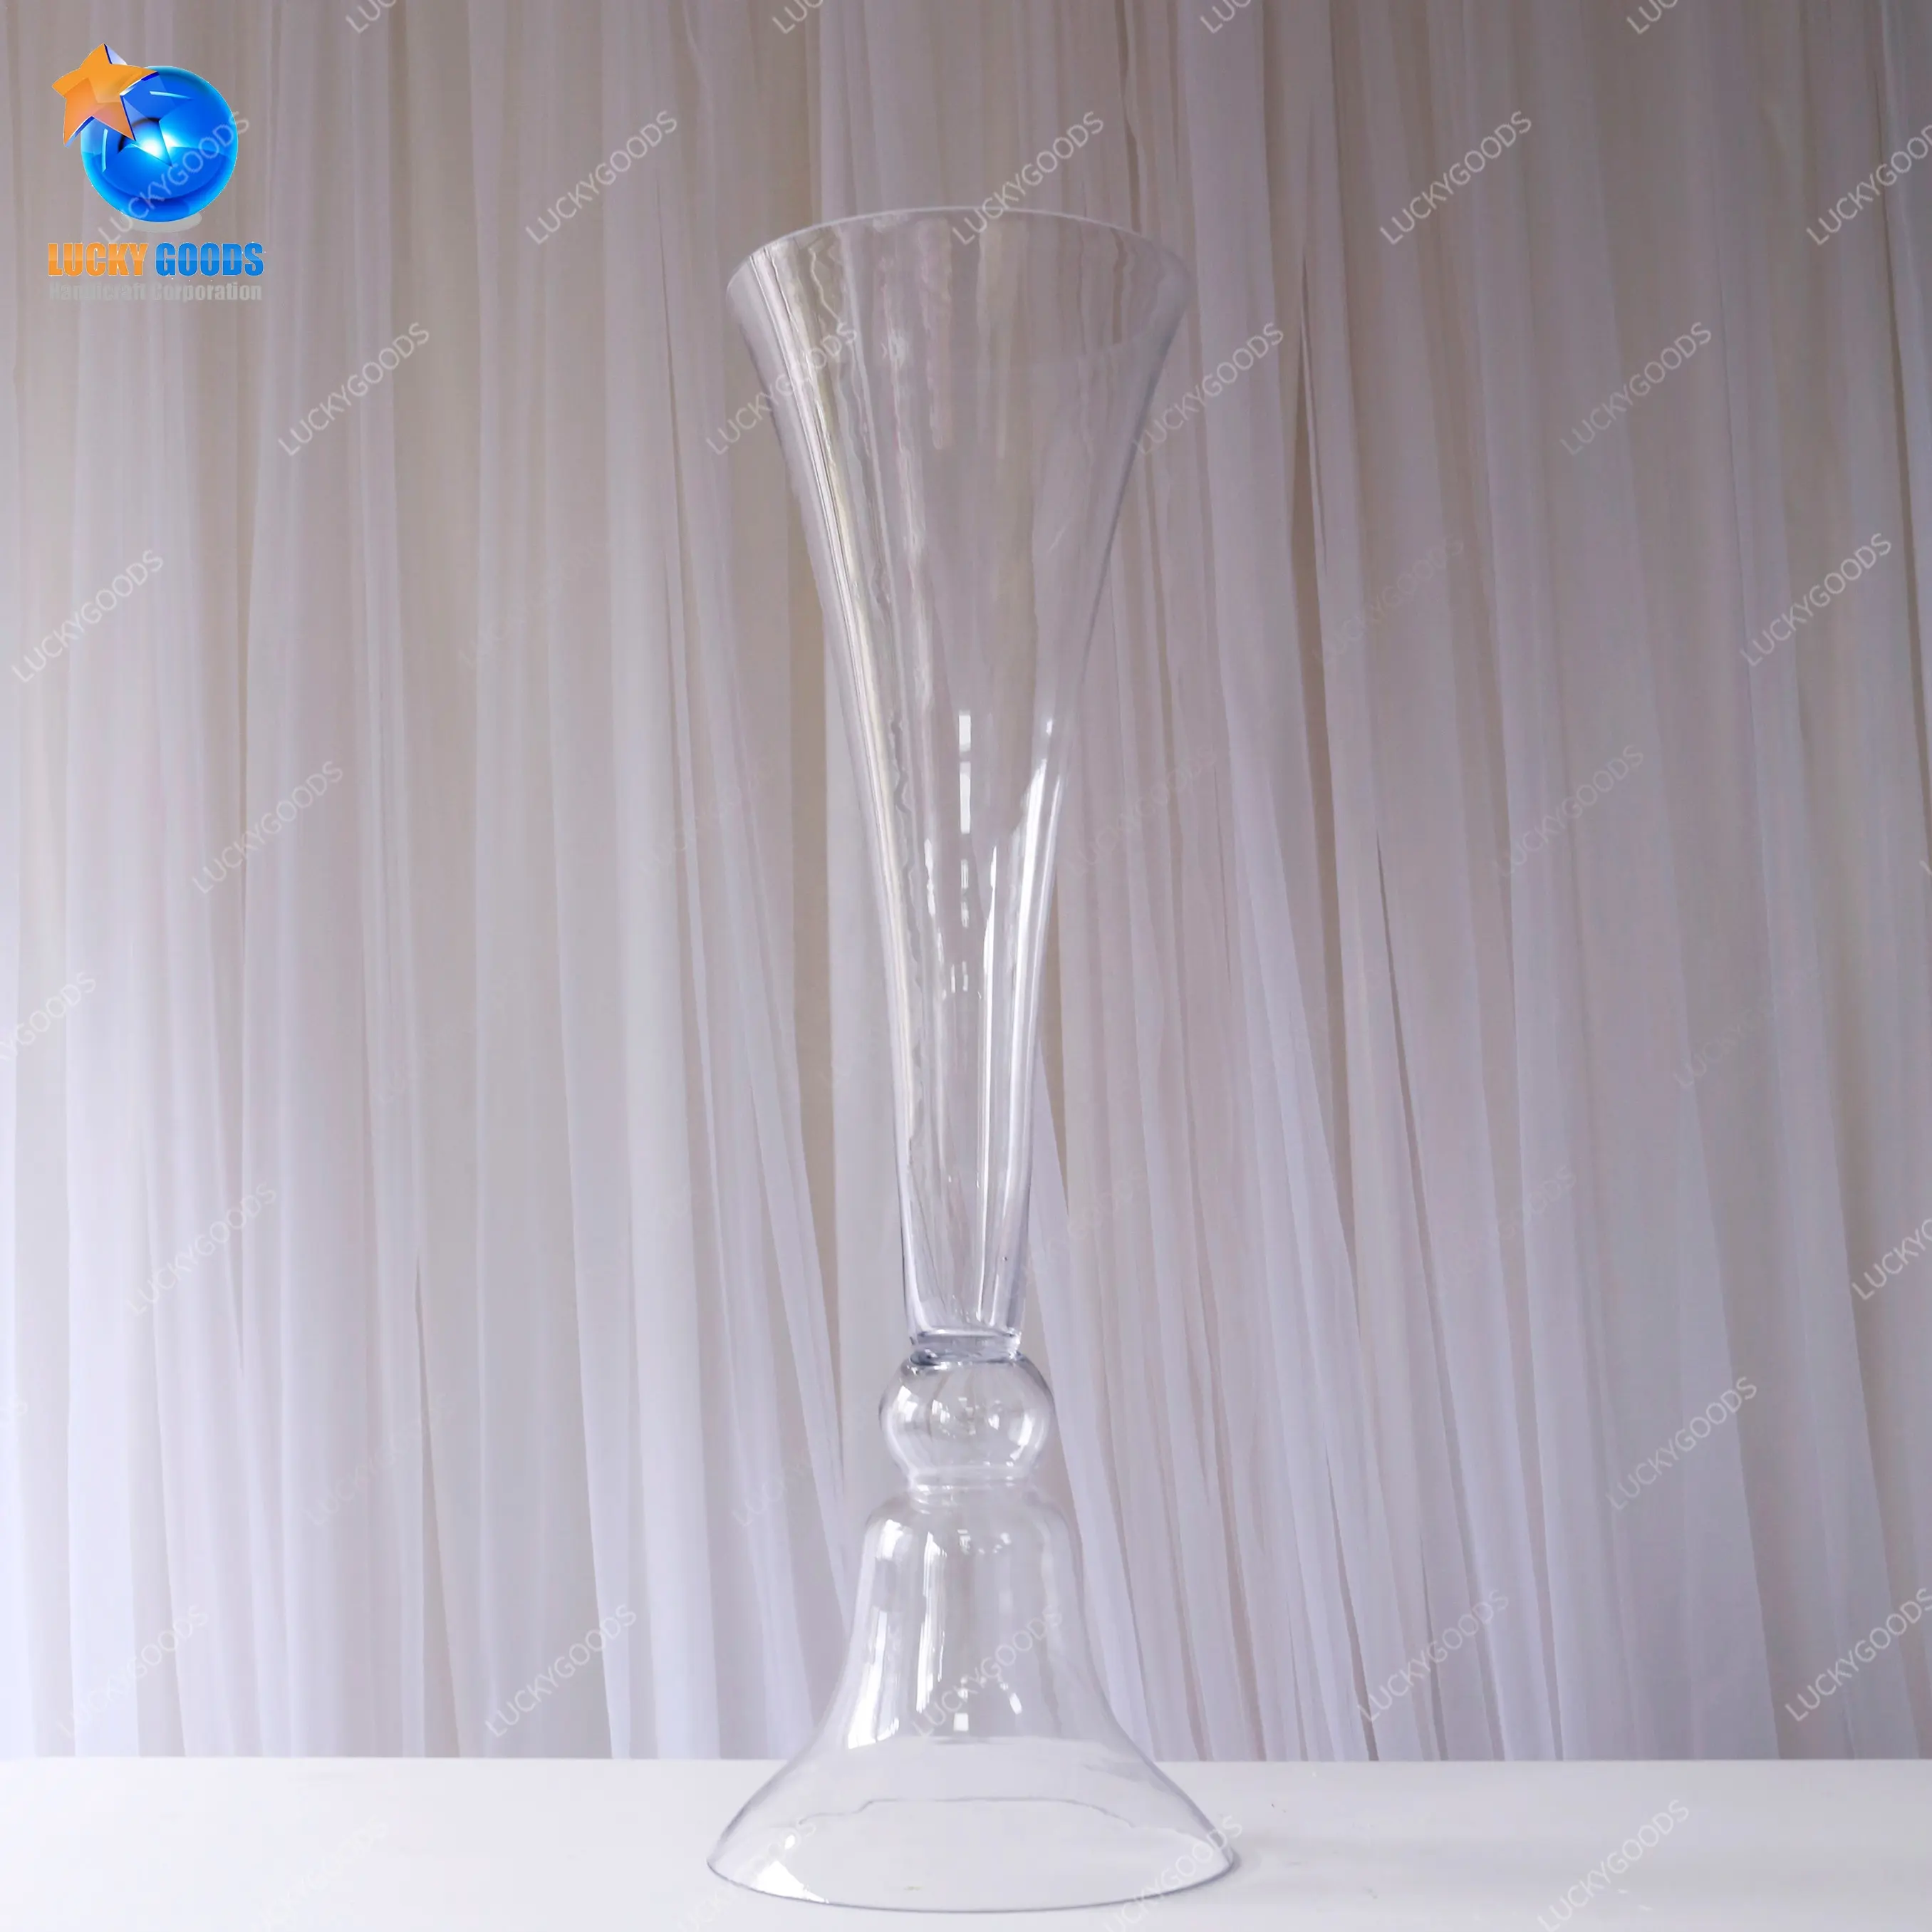 LHP022 centrotavola matrimonio puntelli vasi di fiori in vetro trasparente tavolo evento festa decorazione palcoscenico vaso a tromba